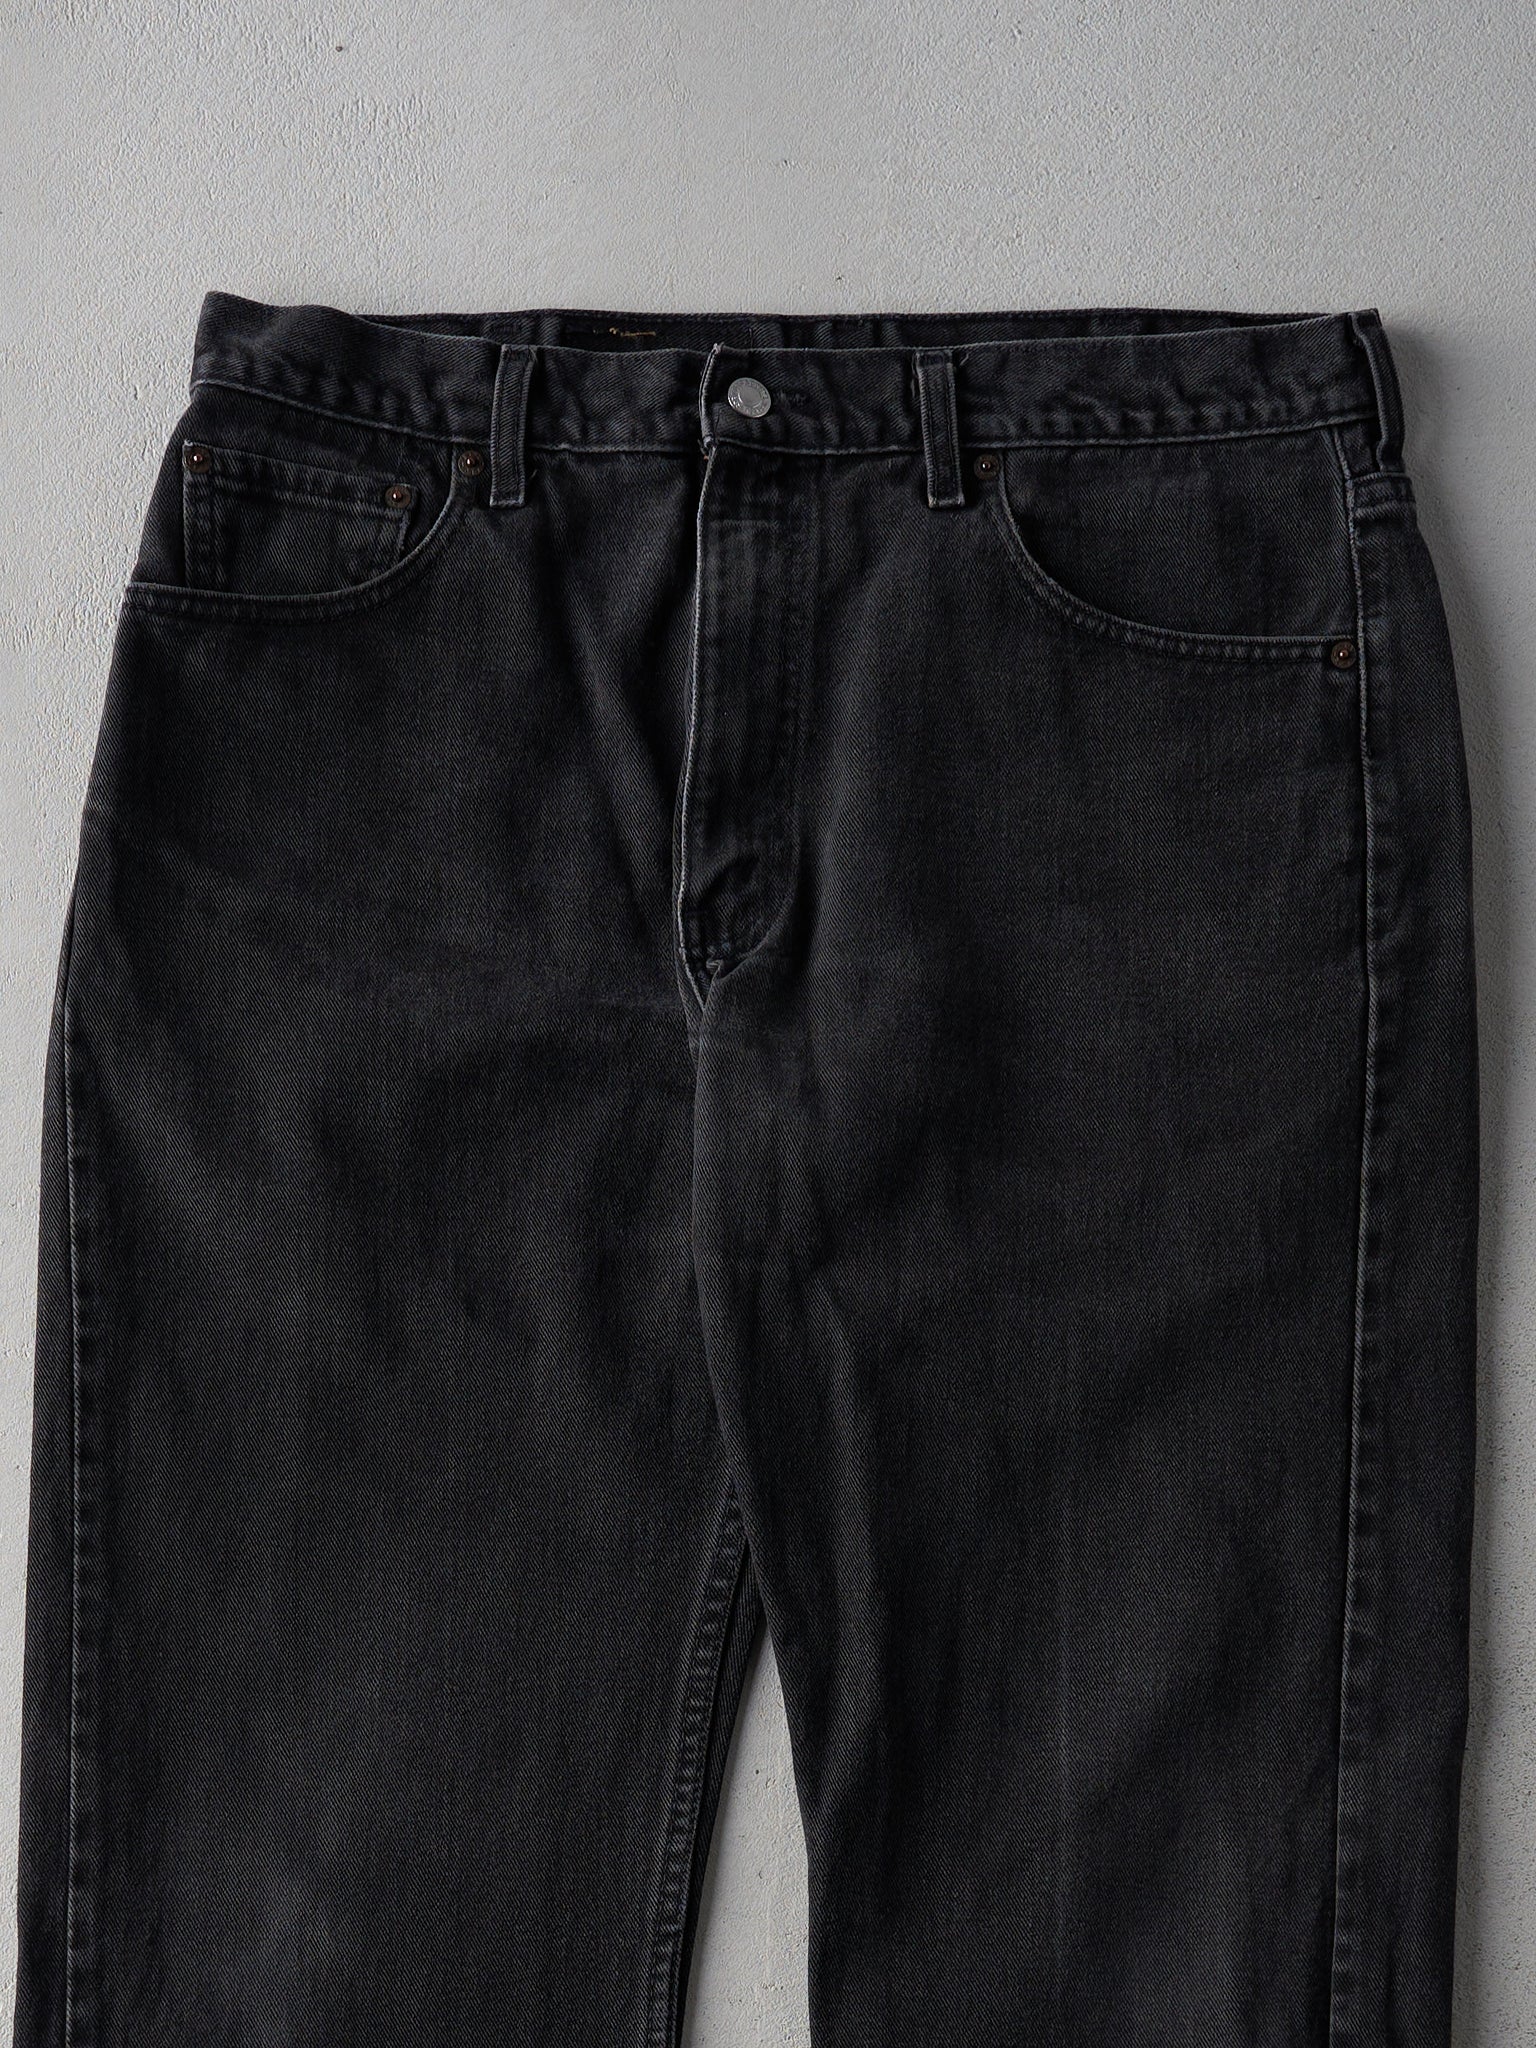 Vintage 90s Black Levi's 505 Pants (36x28)